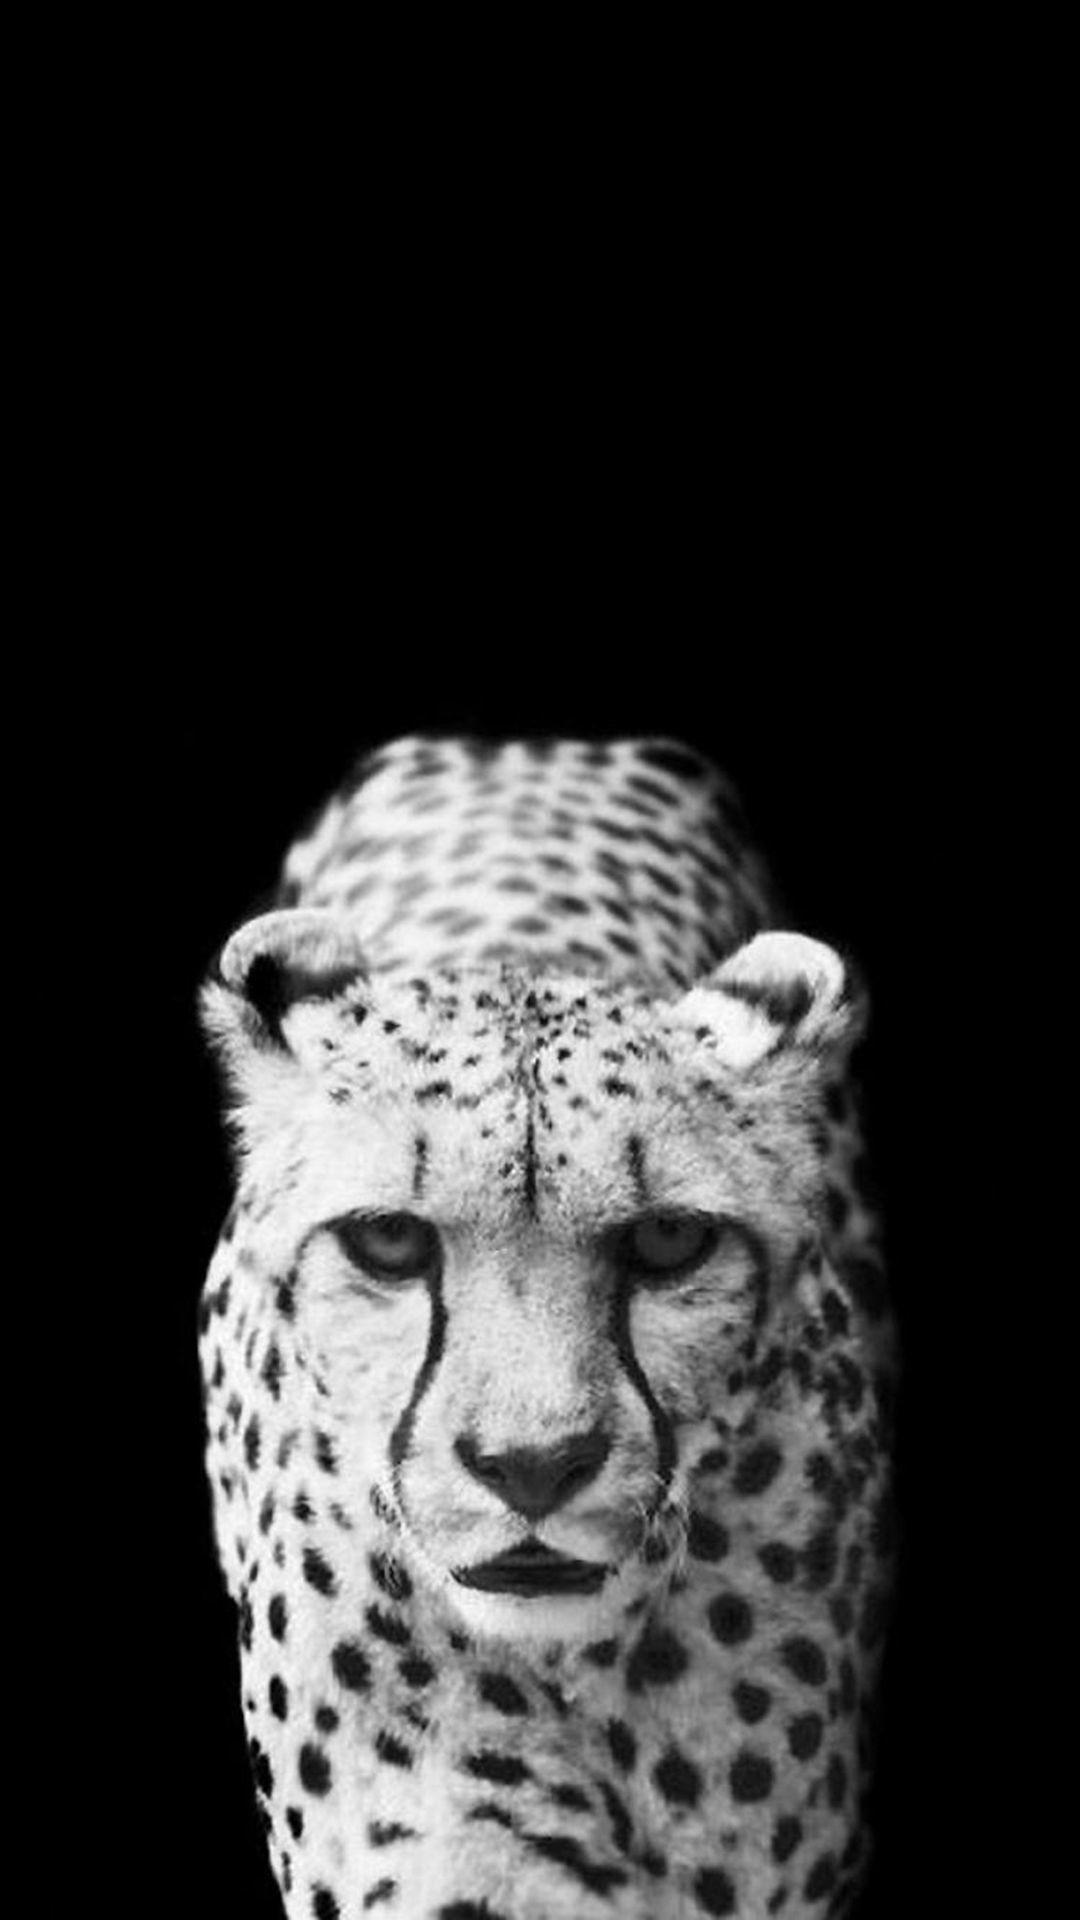 Cheetah iPhone Wallpapers - Wallpaper Cave